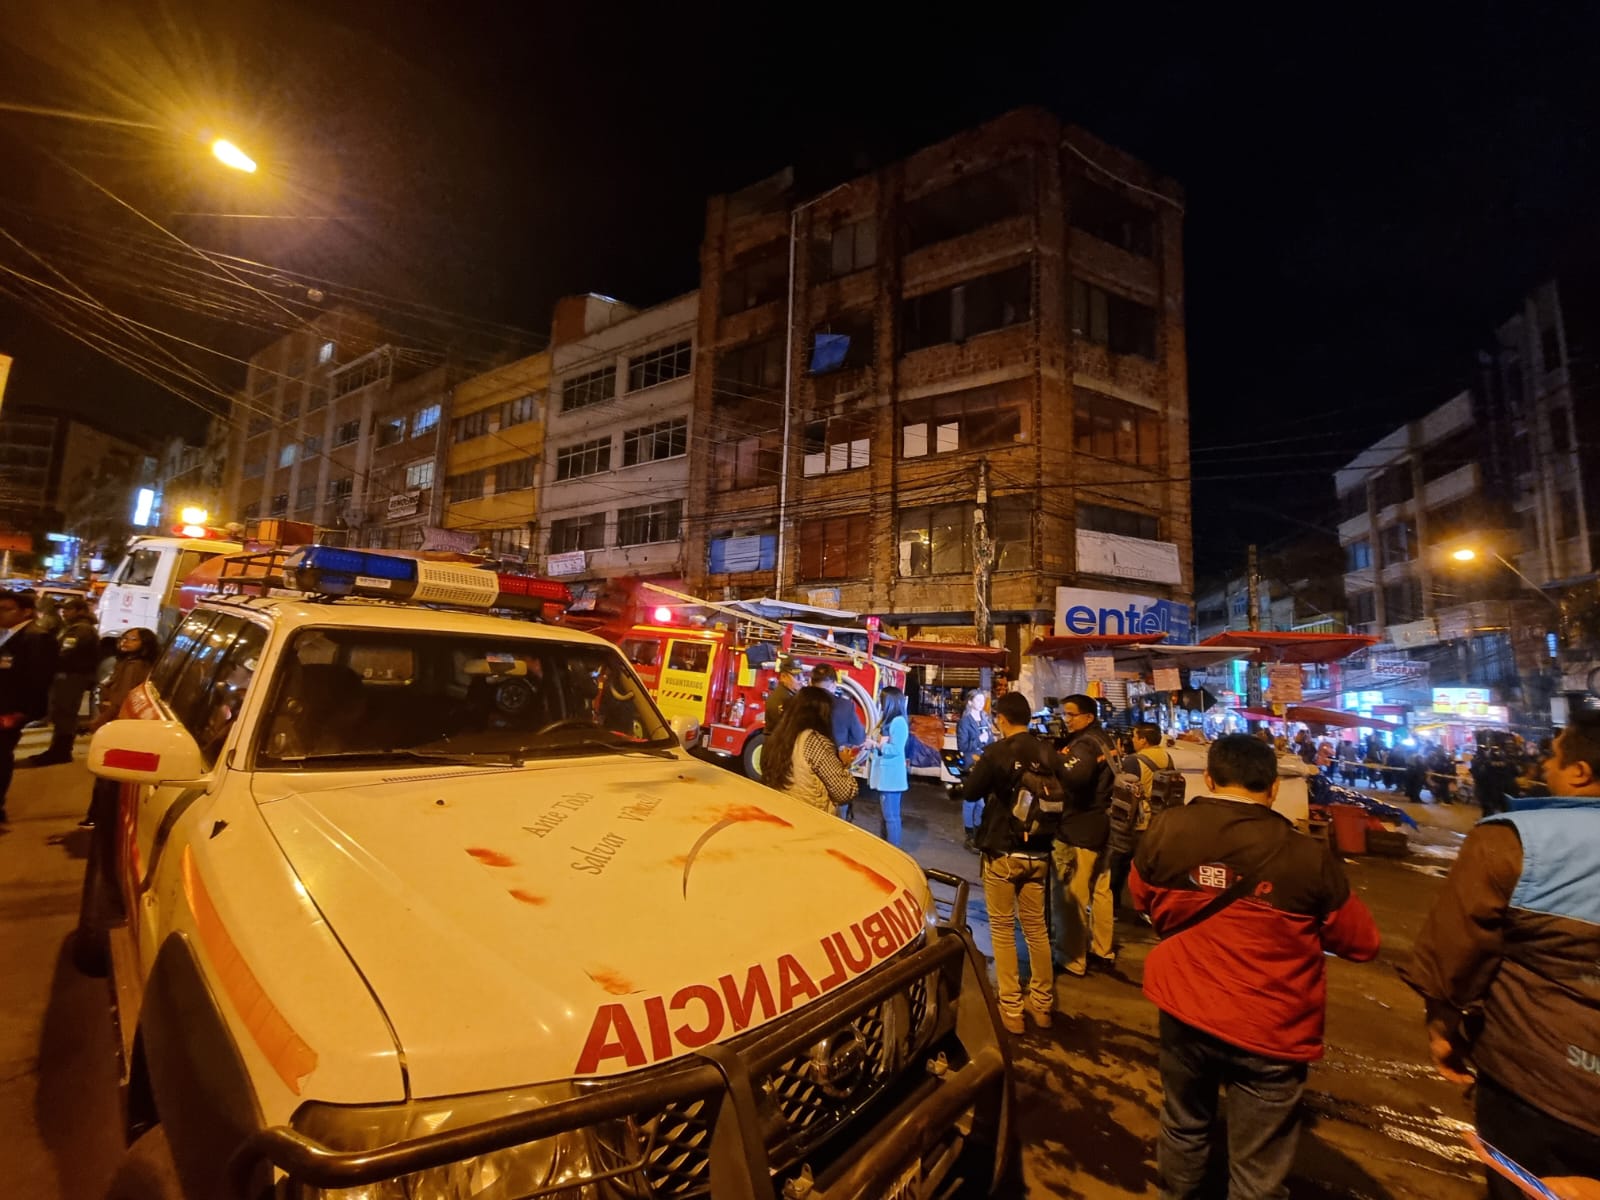 Logran controlar incendio en una casa ubicada en plena zona comercial de La Paz; se descartan heridos